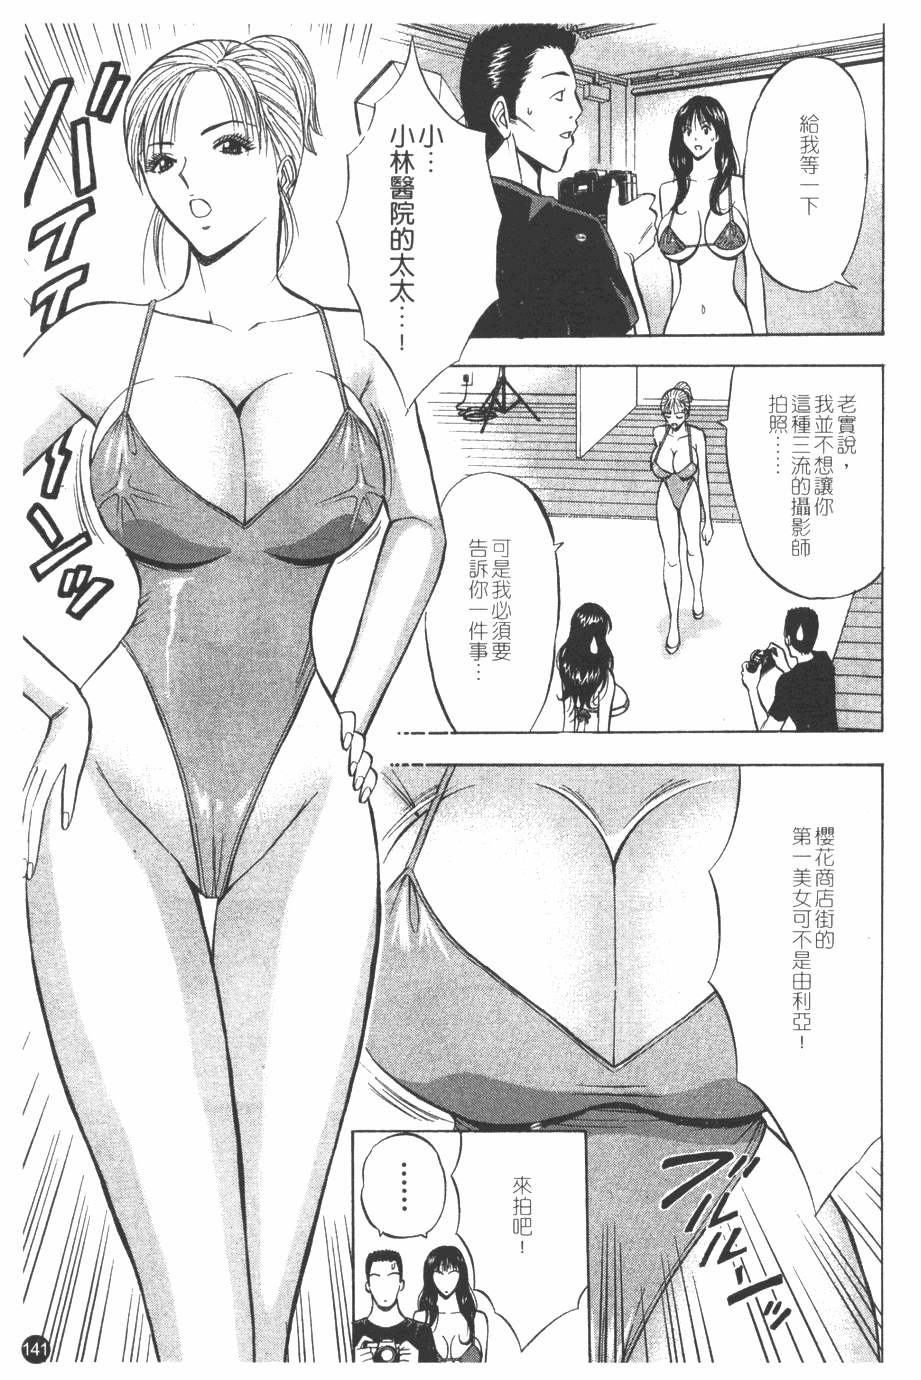 [Nagashima Chosuke] Sakuradoori no Megami - The Venus of SAKURA St. 1 [Chinese] 141